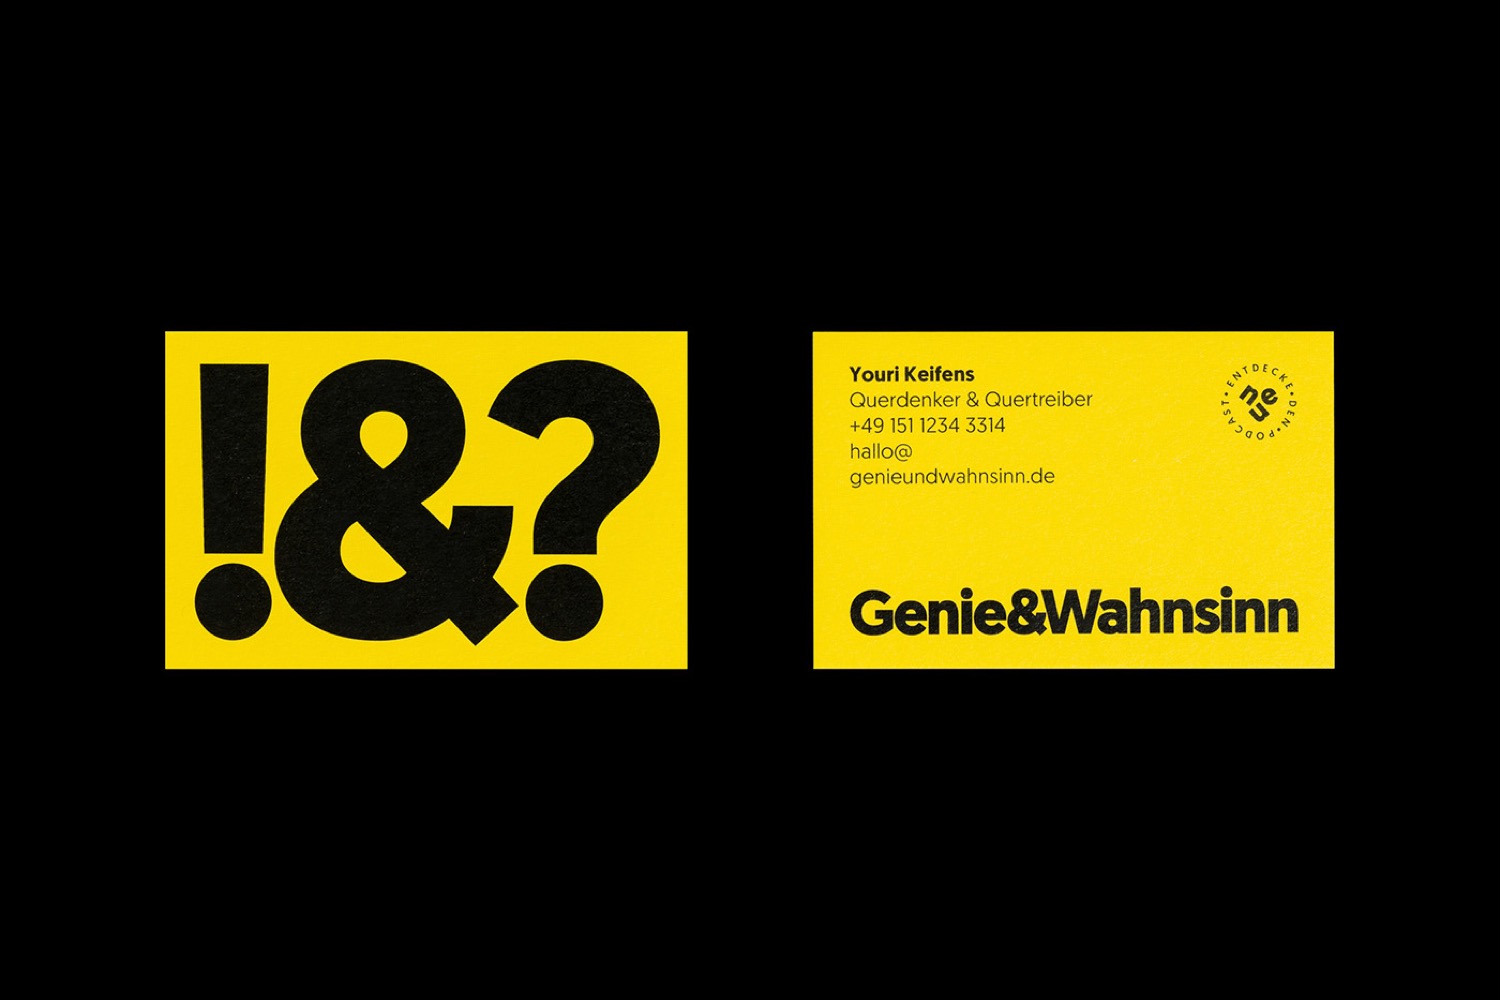 Genie & Wahnsinn极简风格品牌VI设计